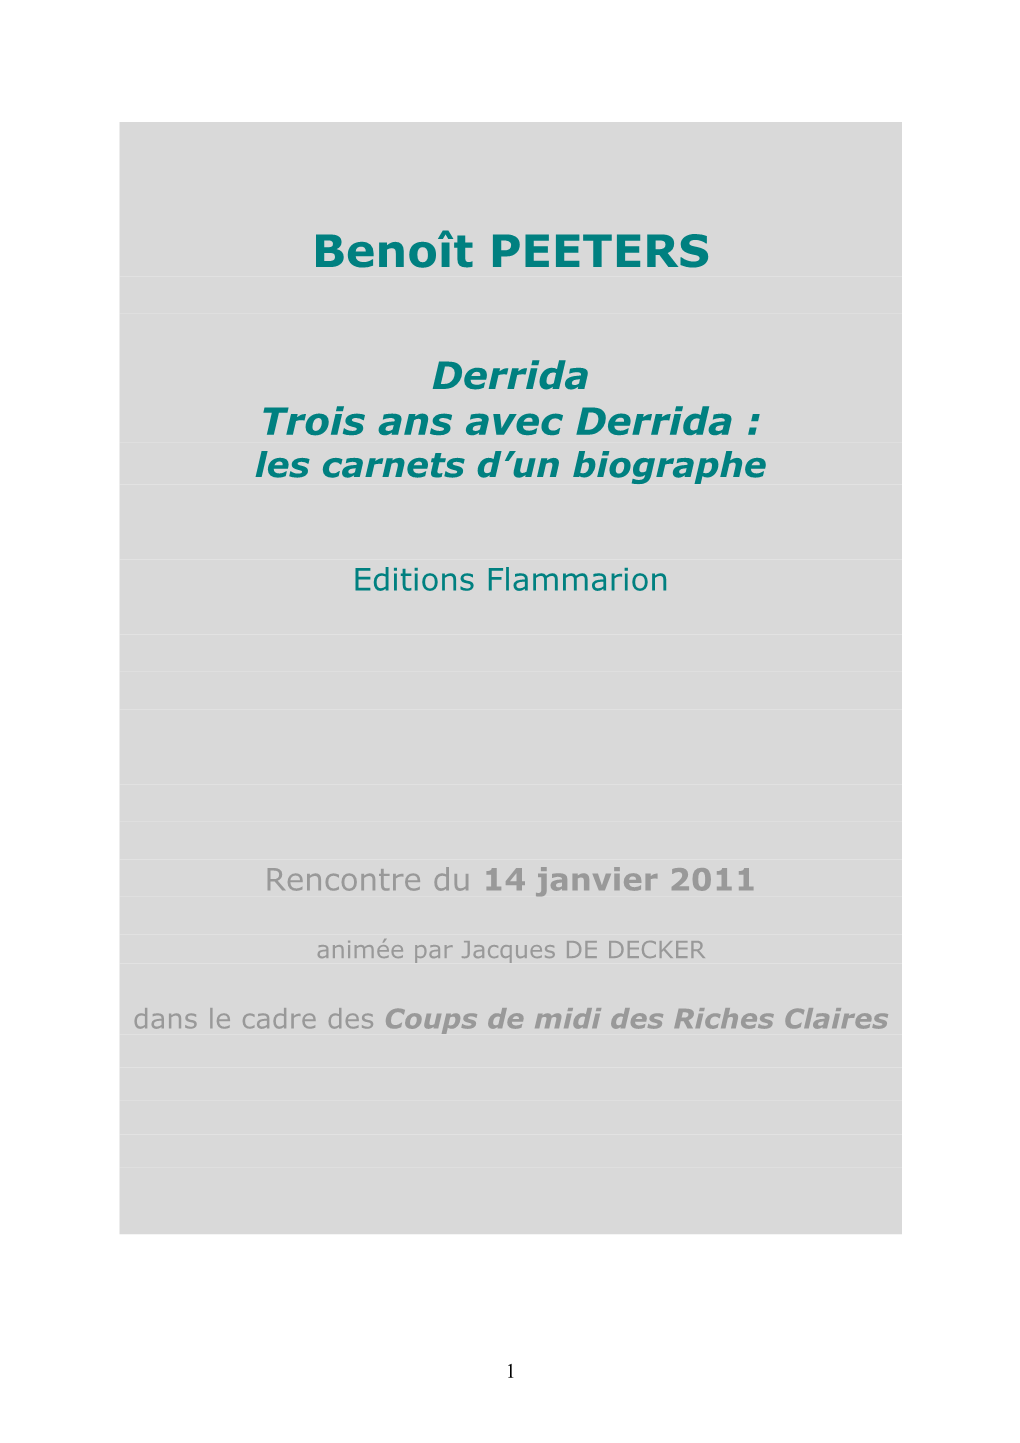 Benoît PEETERS